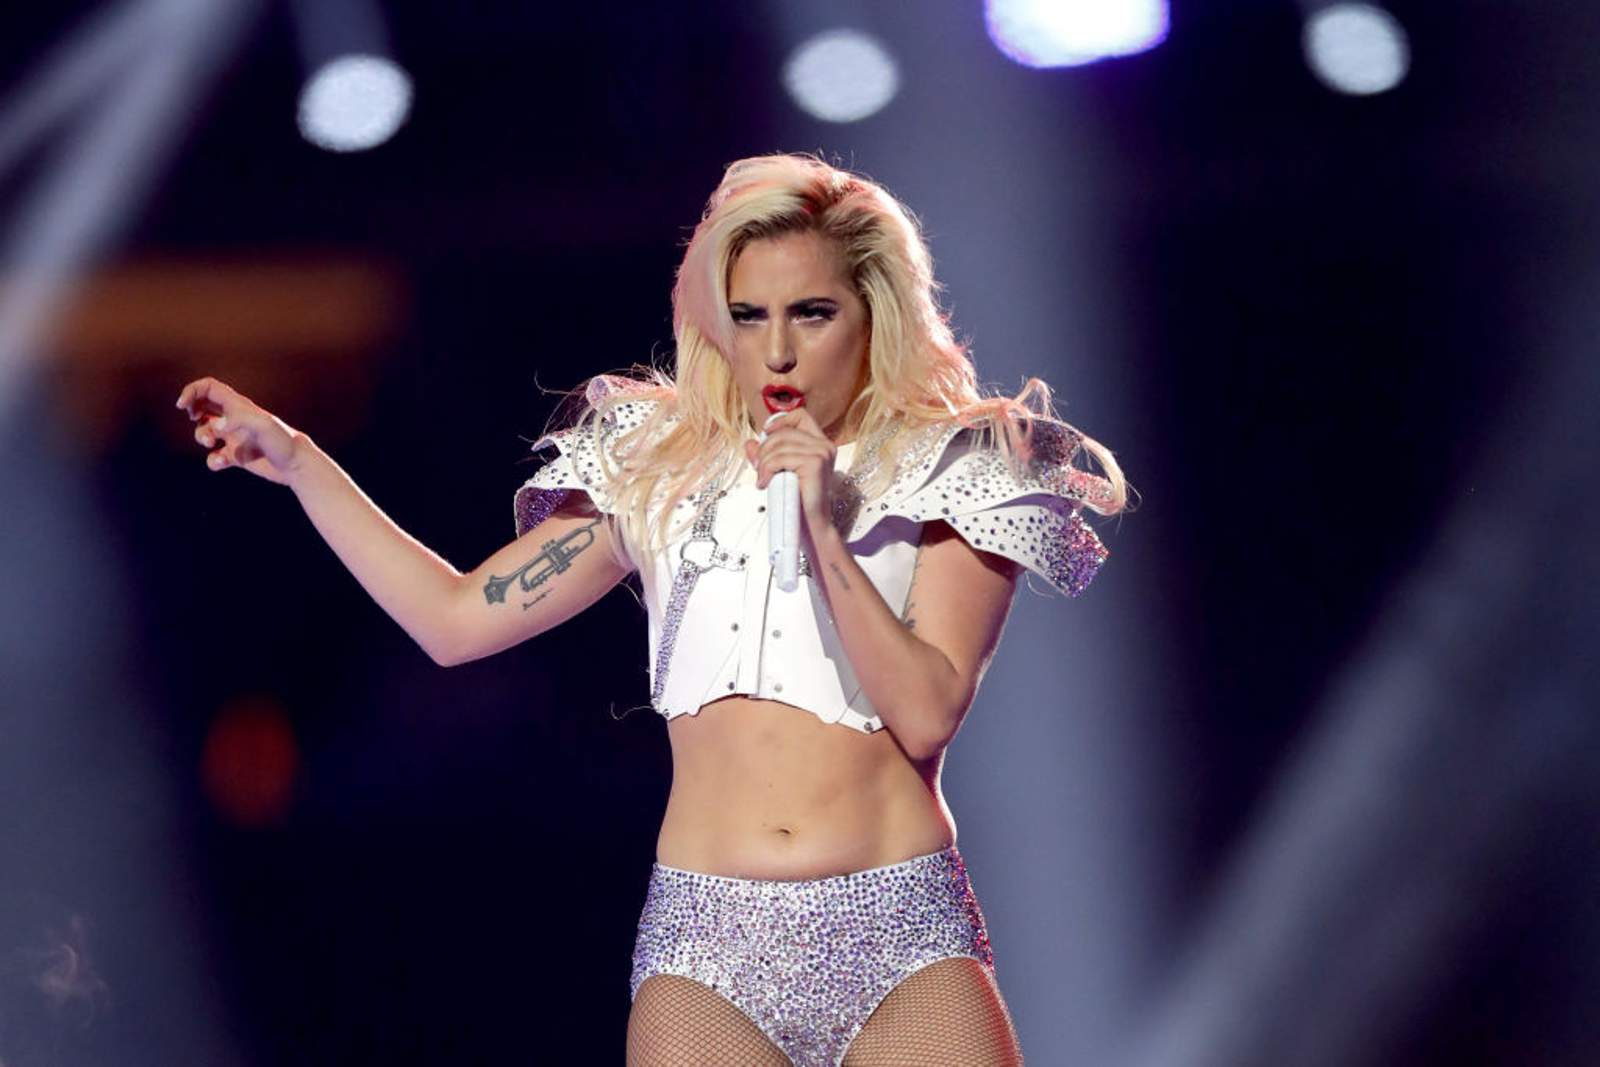 Super Bowl, World Tour, Now Grammys for Gaga